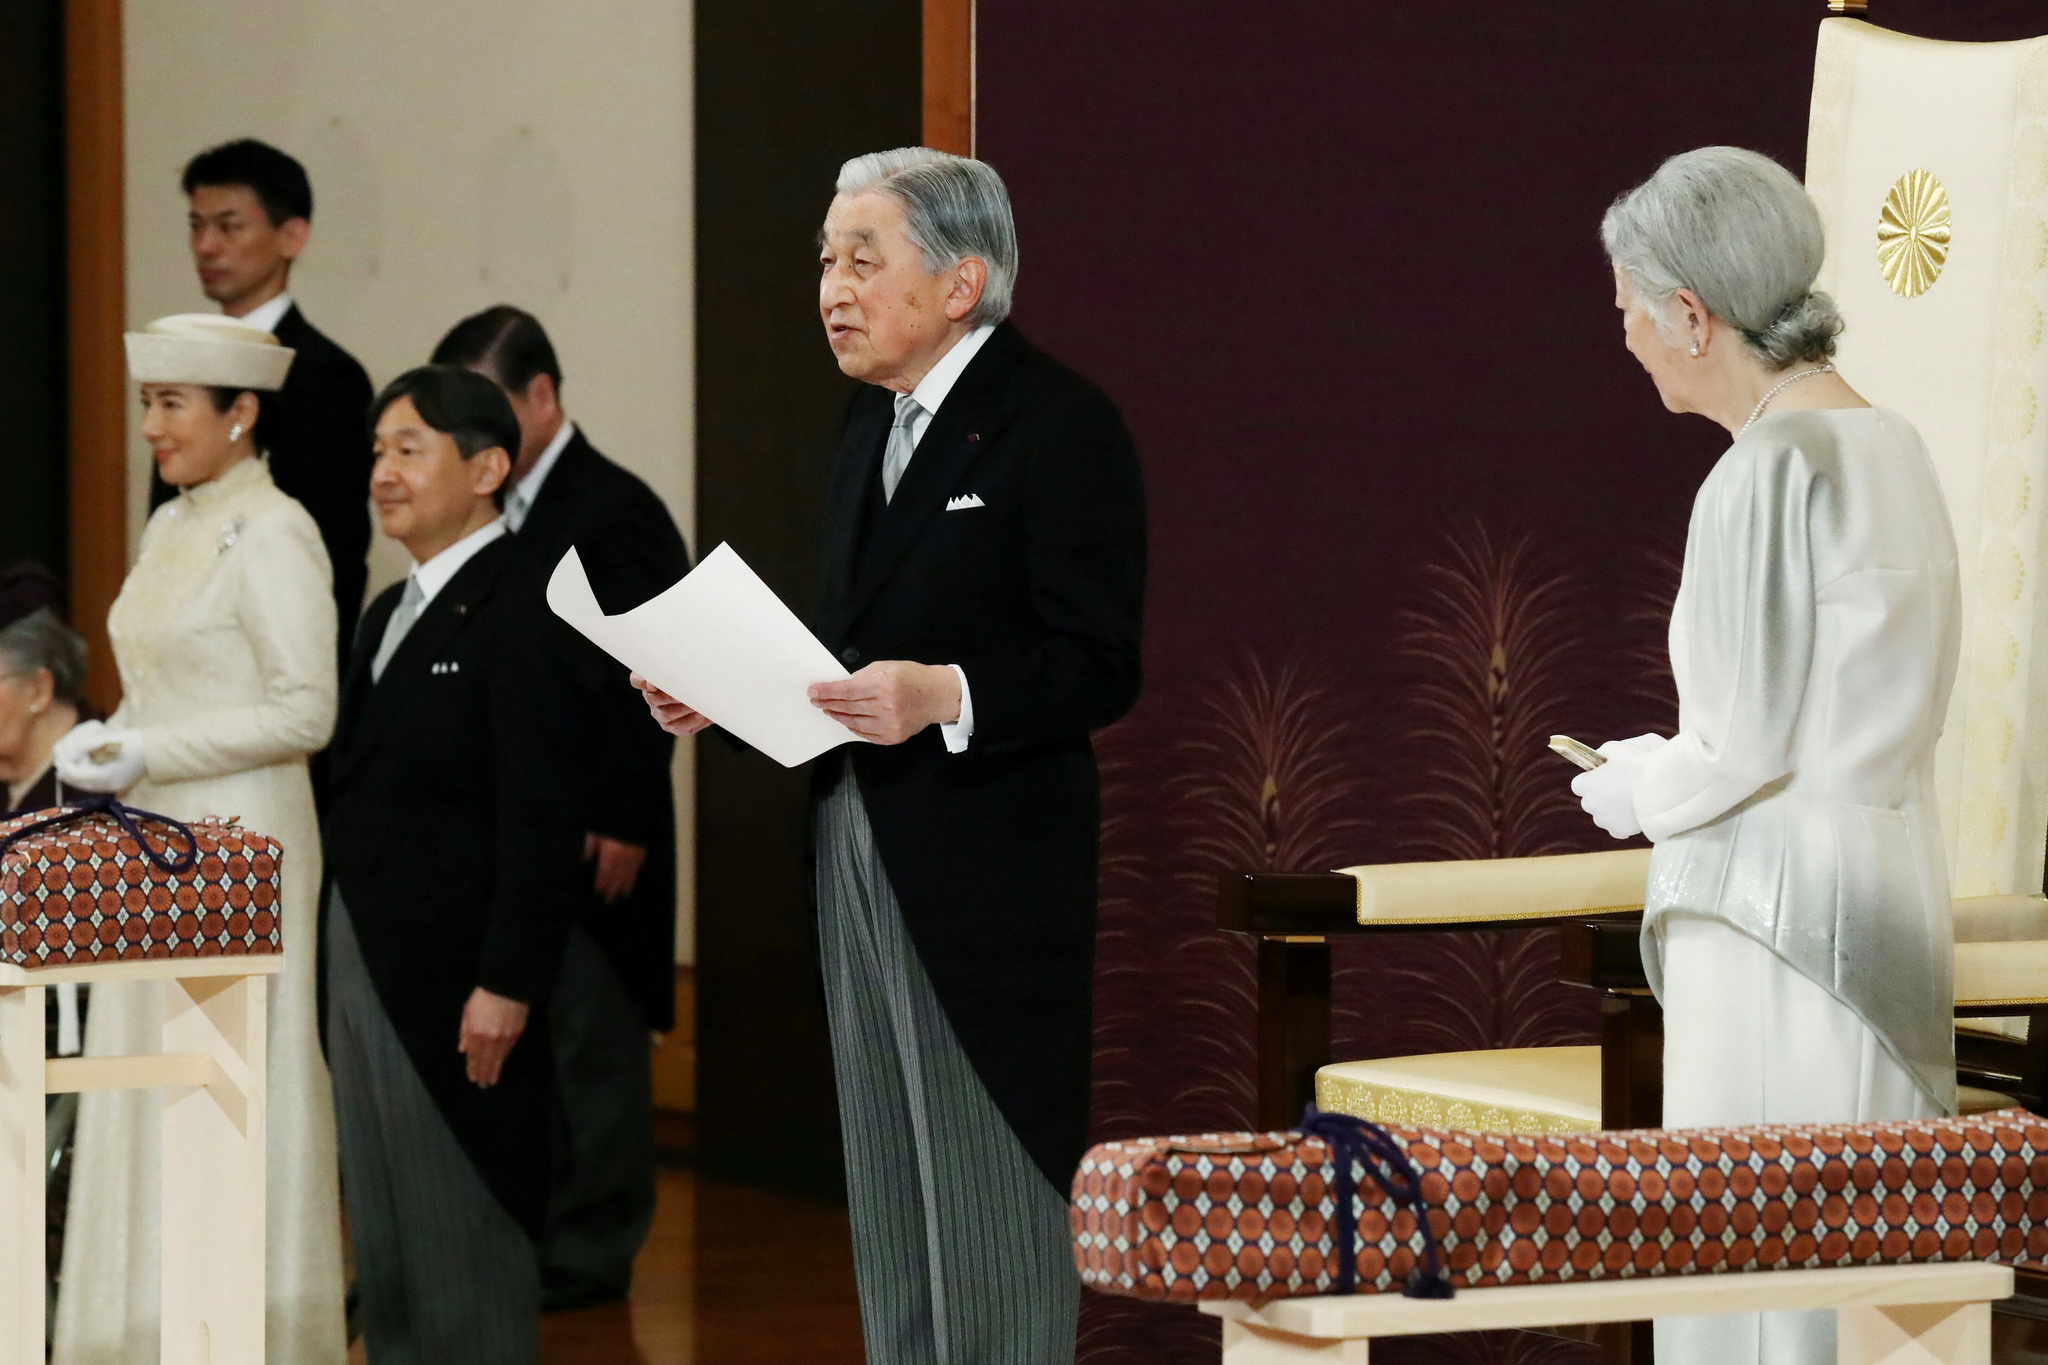 Nhật Hoàng Akihito (giữa), Hoàng hậu Michiko (phải) cùng các thành viên Hoàng gia tại lễ thoái vị trong Hoàng cung ở Tokyo ngày 30/4/2019. (Ảnh: AFP/TTXVN)